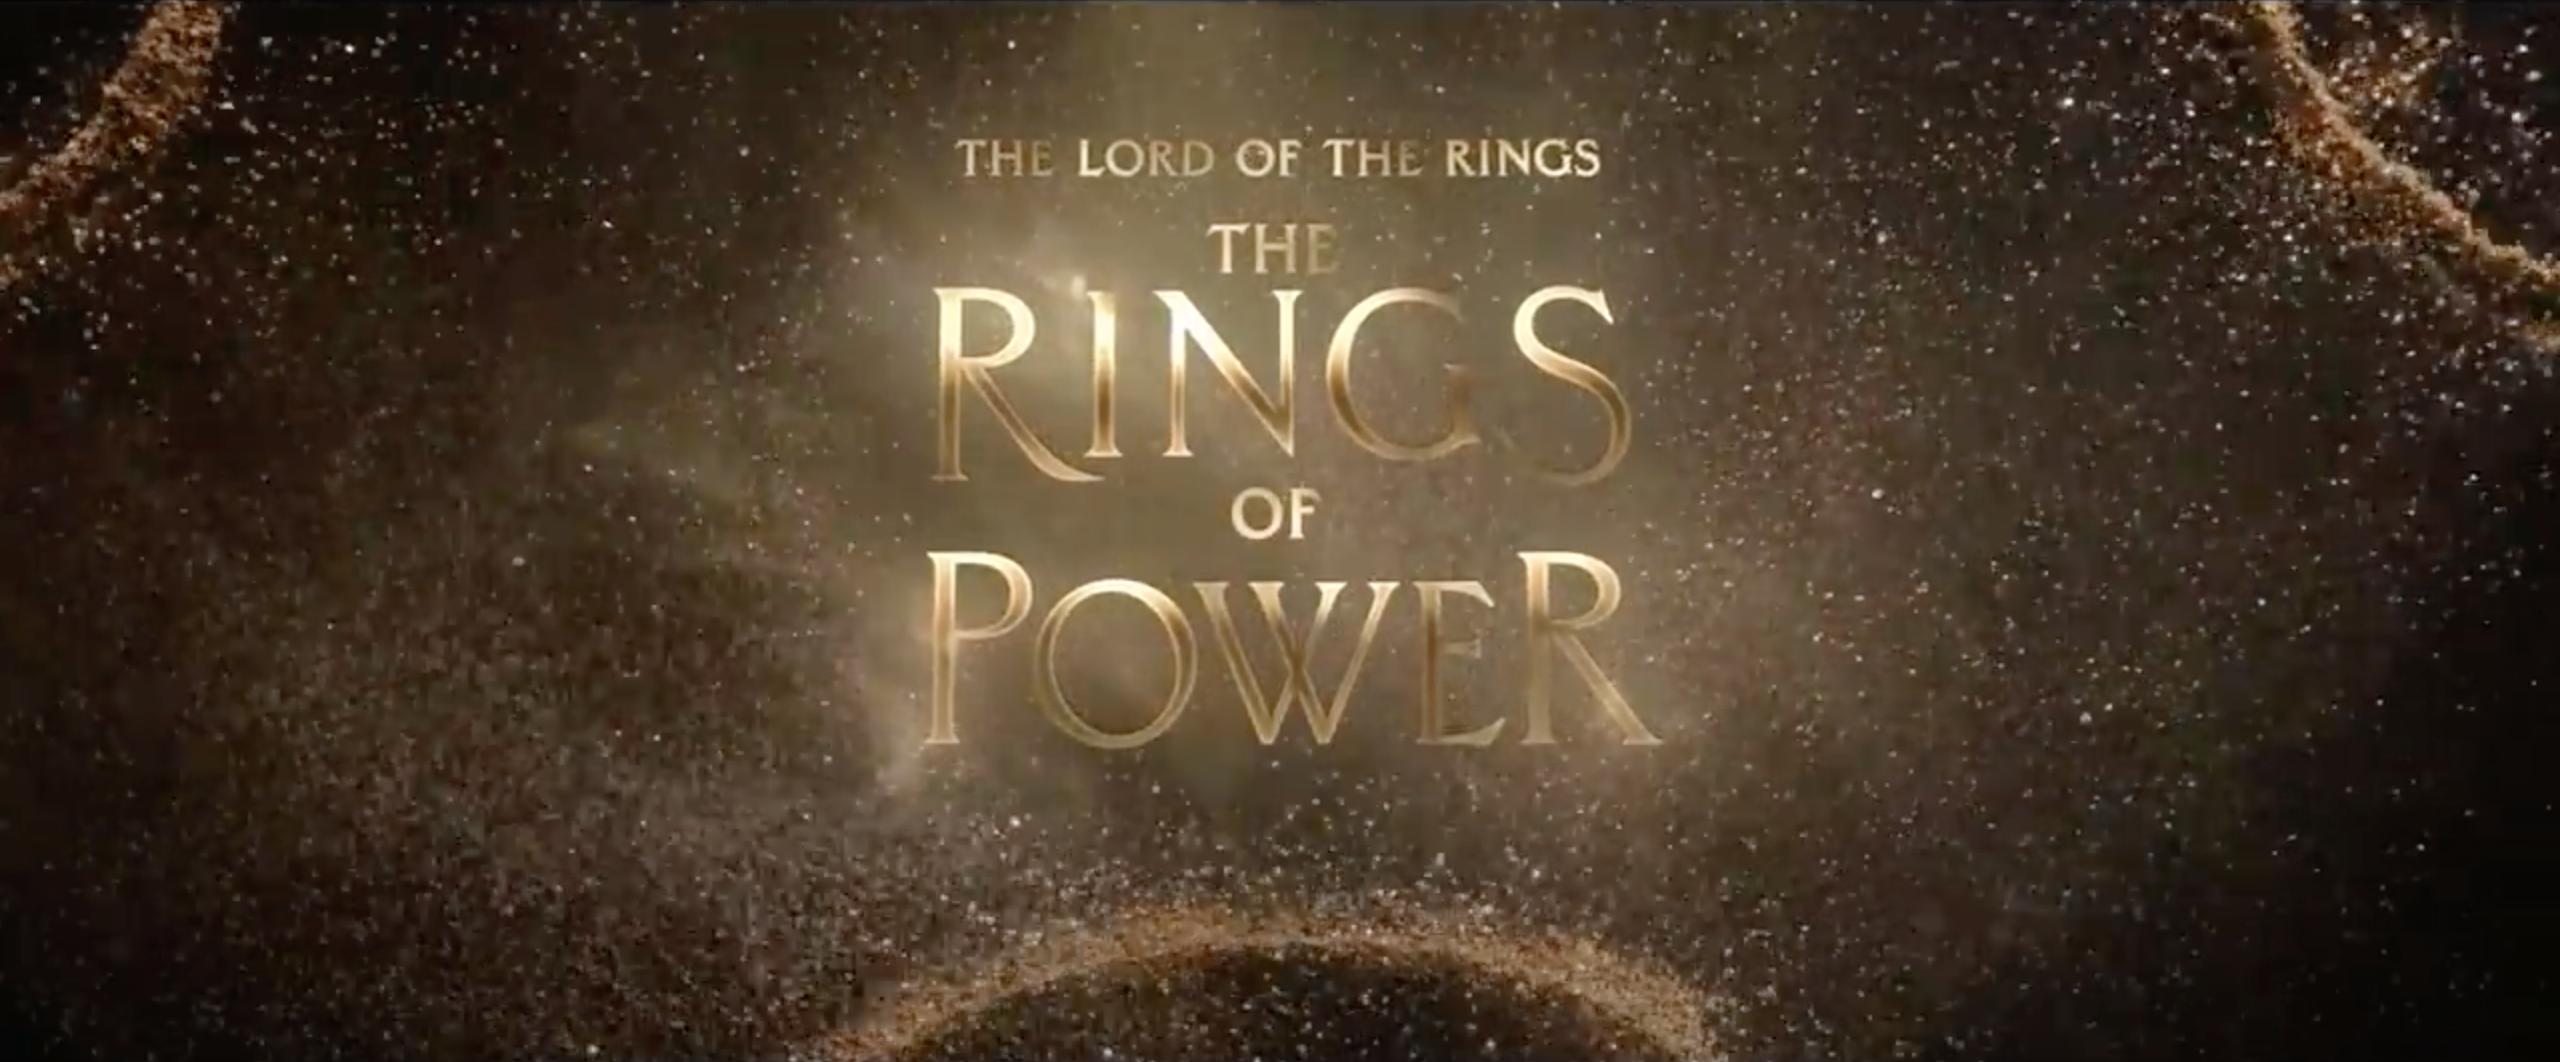 Anello del potere dal film Il Signore degli Anelli RRC2210